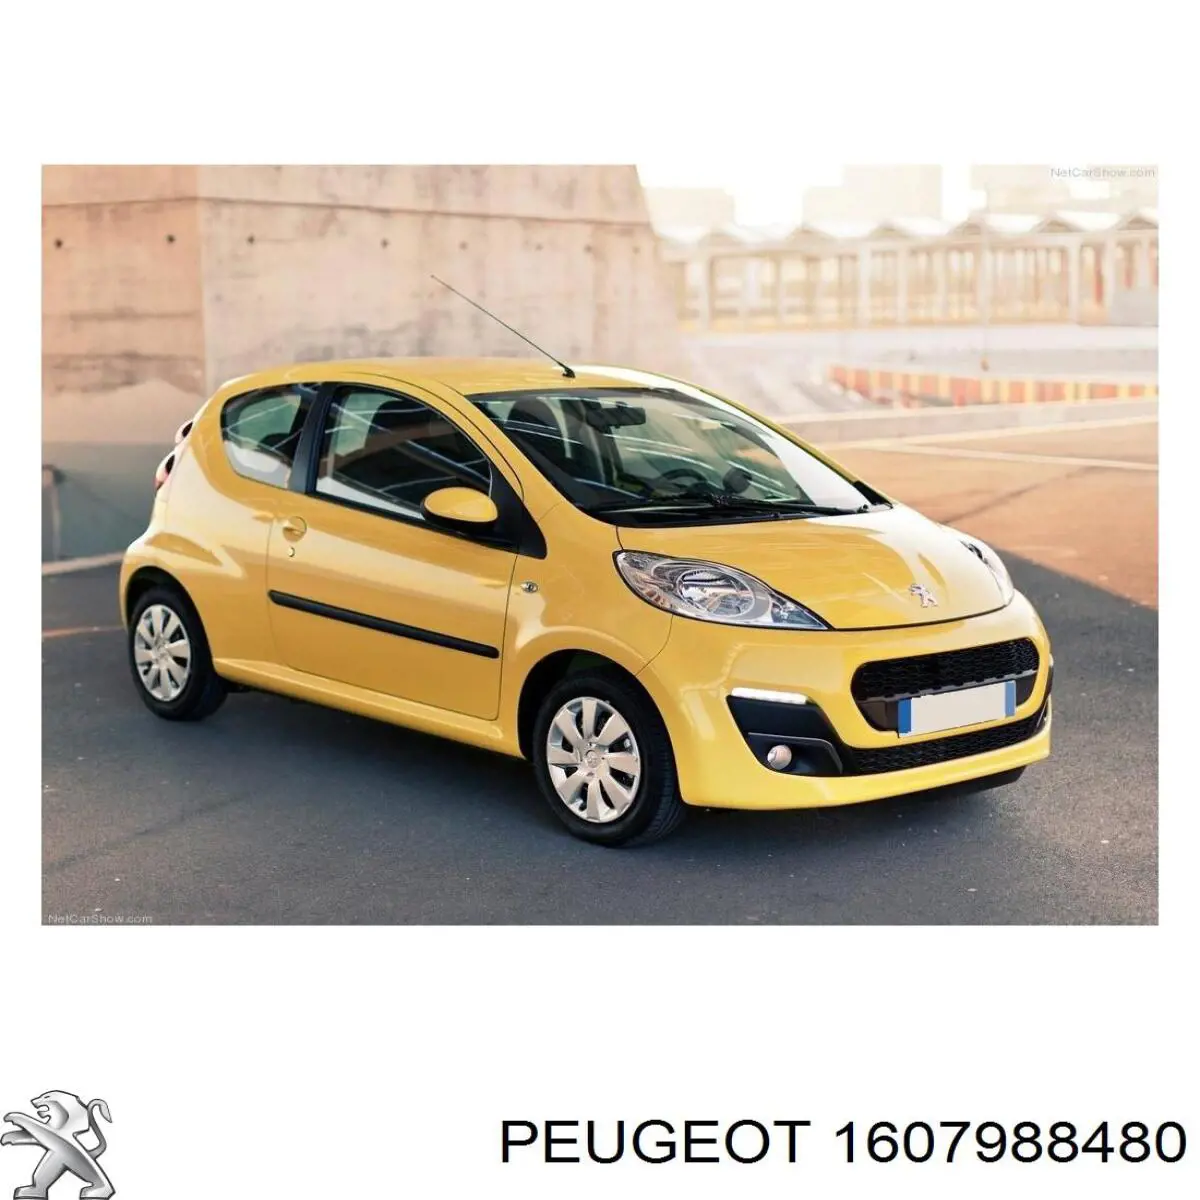 1607988480 Peugeot/Citroen rejilla de ventilación, parachoques trasero, central